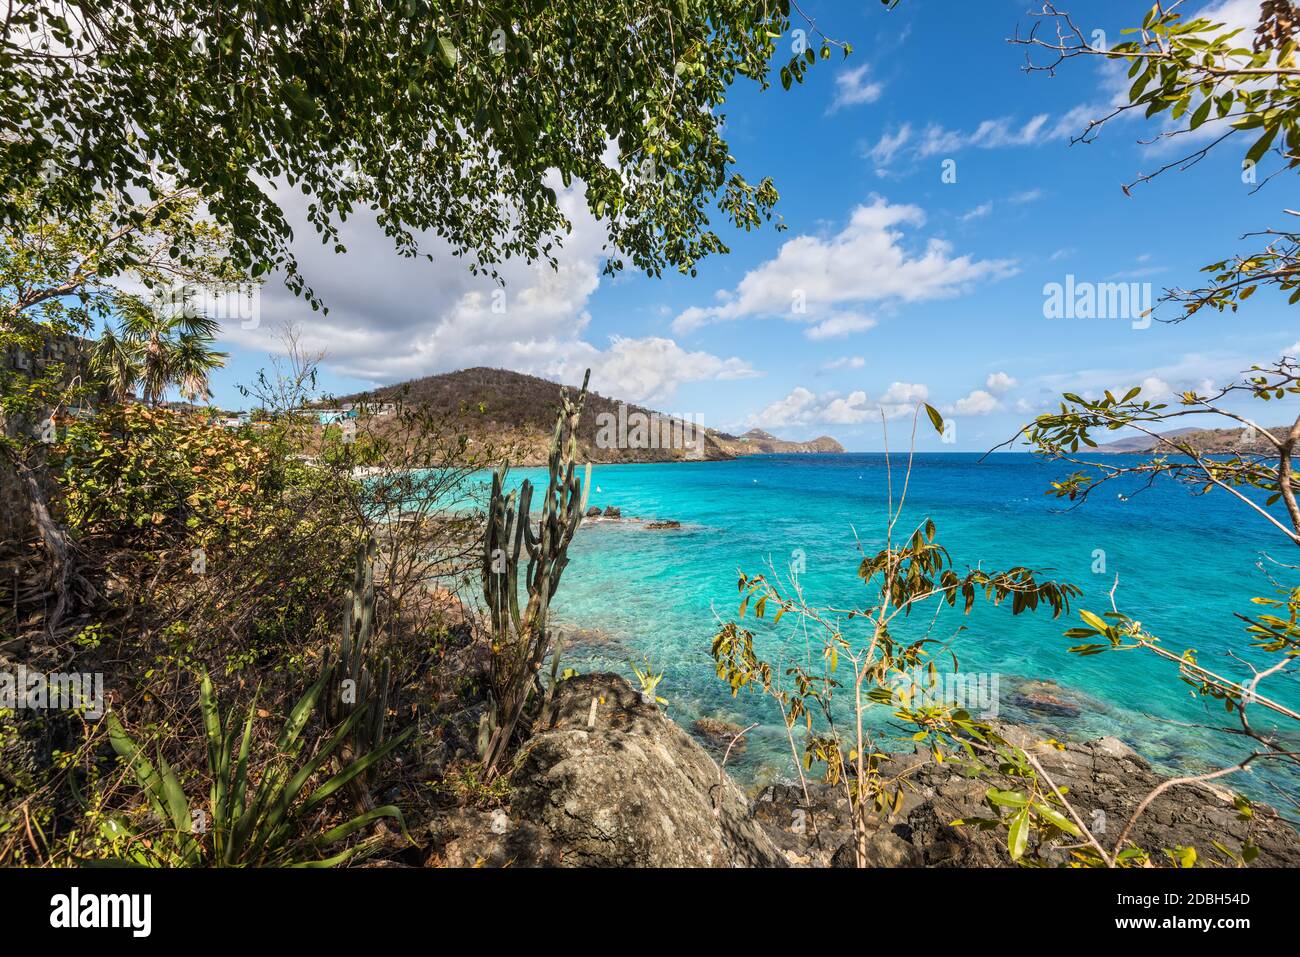 Paisaje marino con una costa rocosa de Coki Point Bech - St Thomas, Islas Vírgenes de los Estados Unidos, Caribe Foto de stock